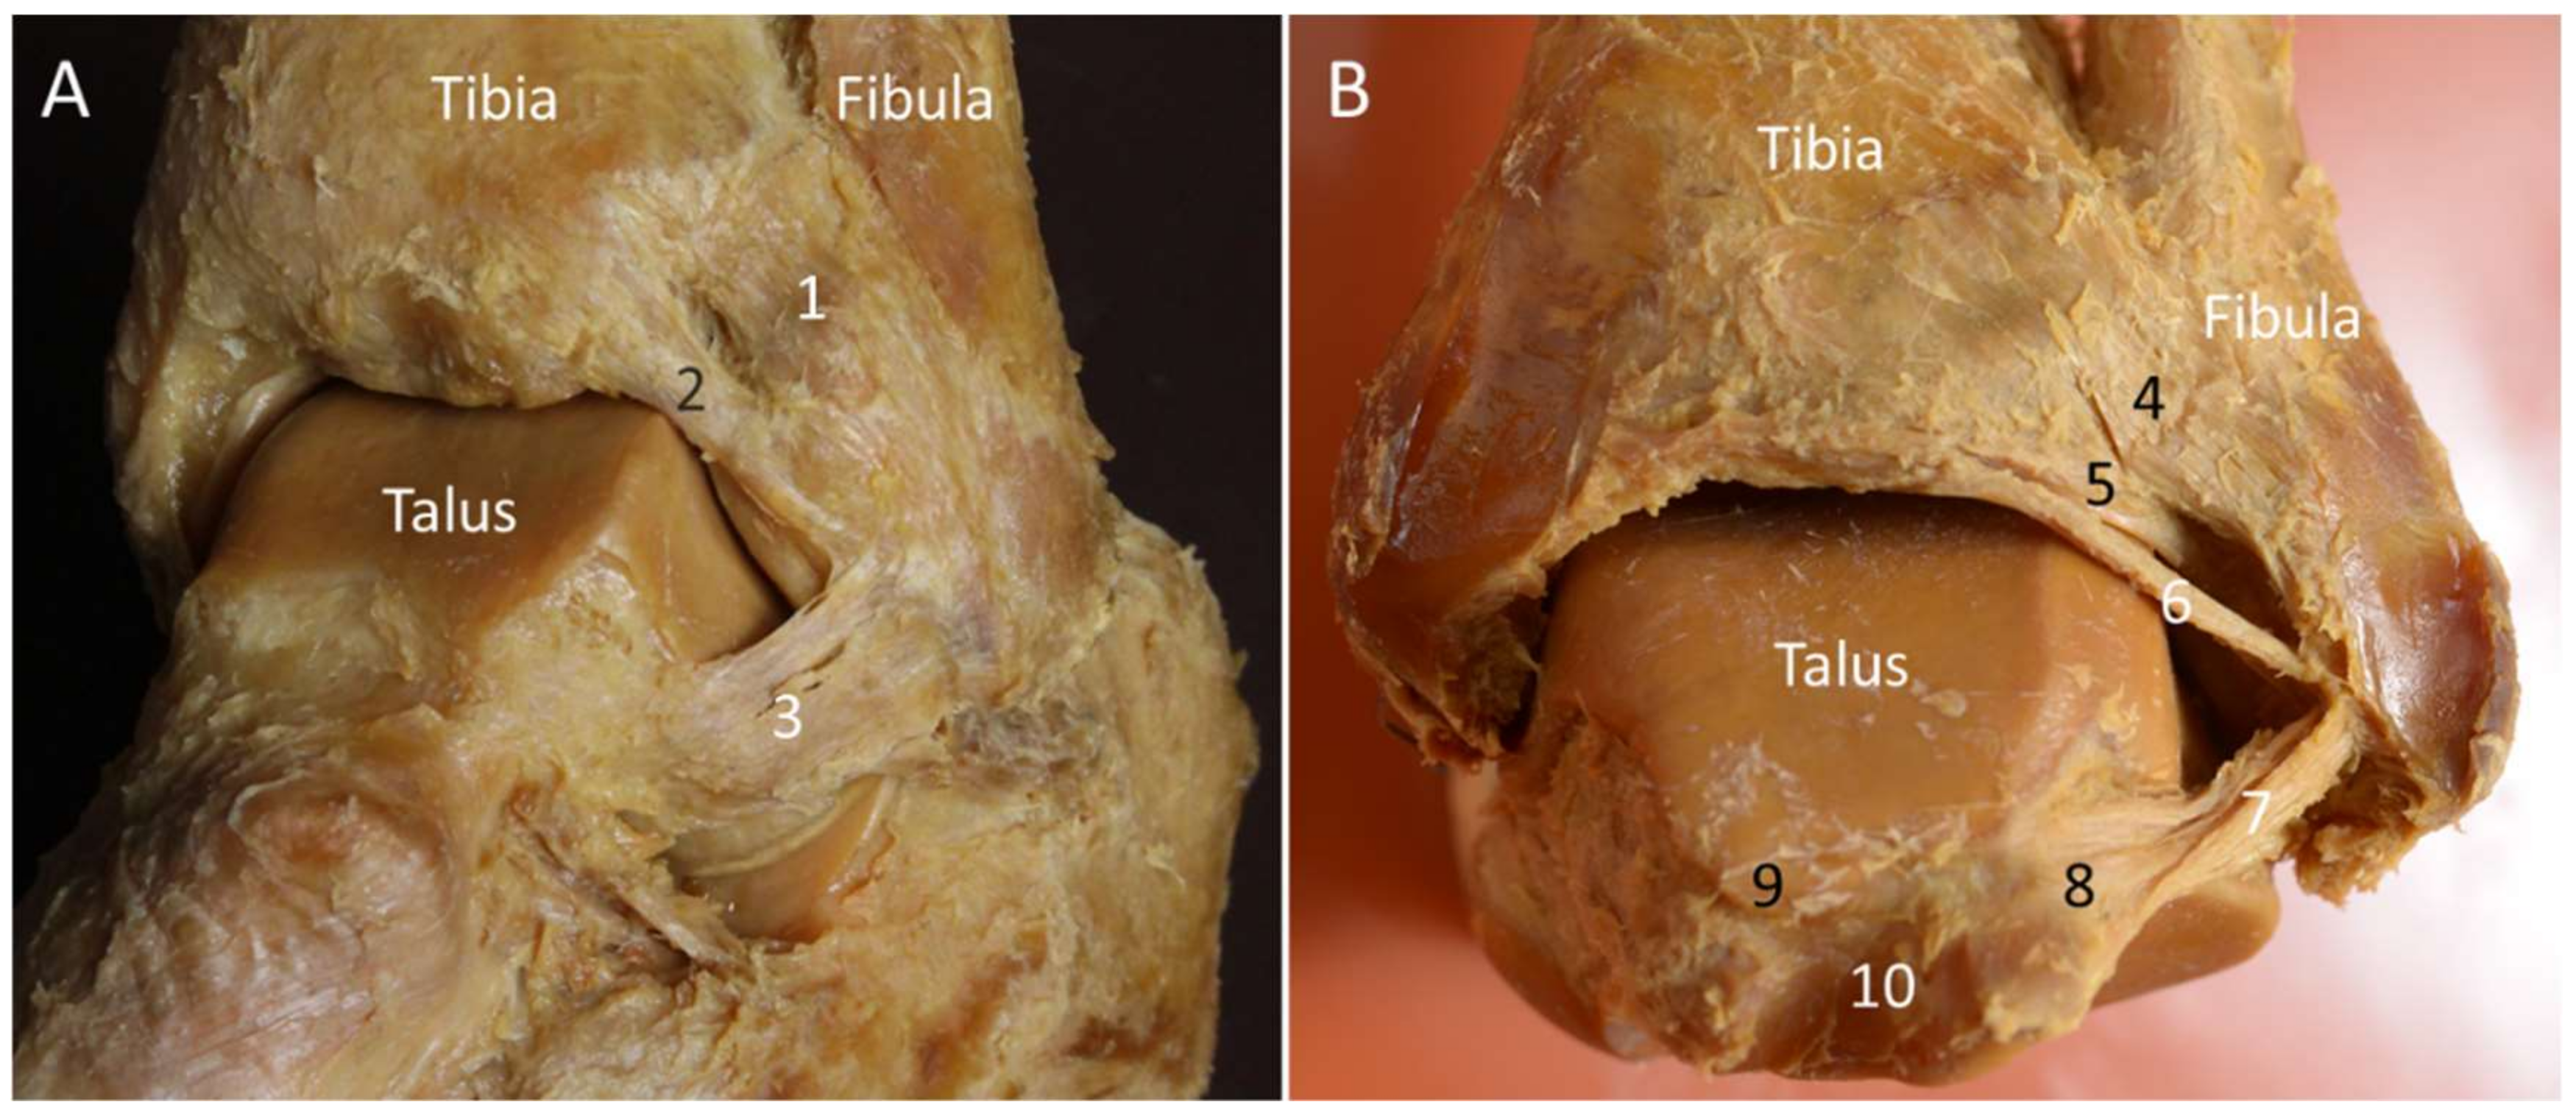 Anatomy Stock Images  ankle-ligaments-medial-deltoid-ligament -ligamentum-deltoideum-tibiotalaris-anterior-posterior-tibiocalcanea-tibionavicularis